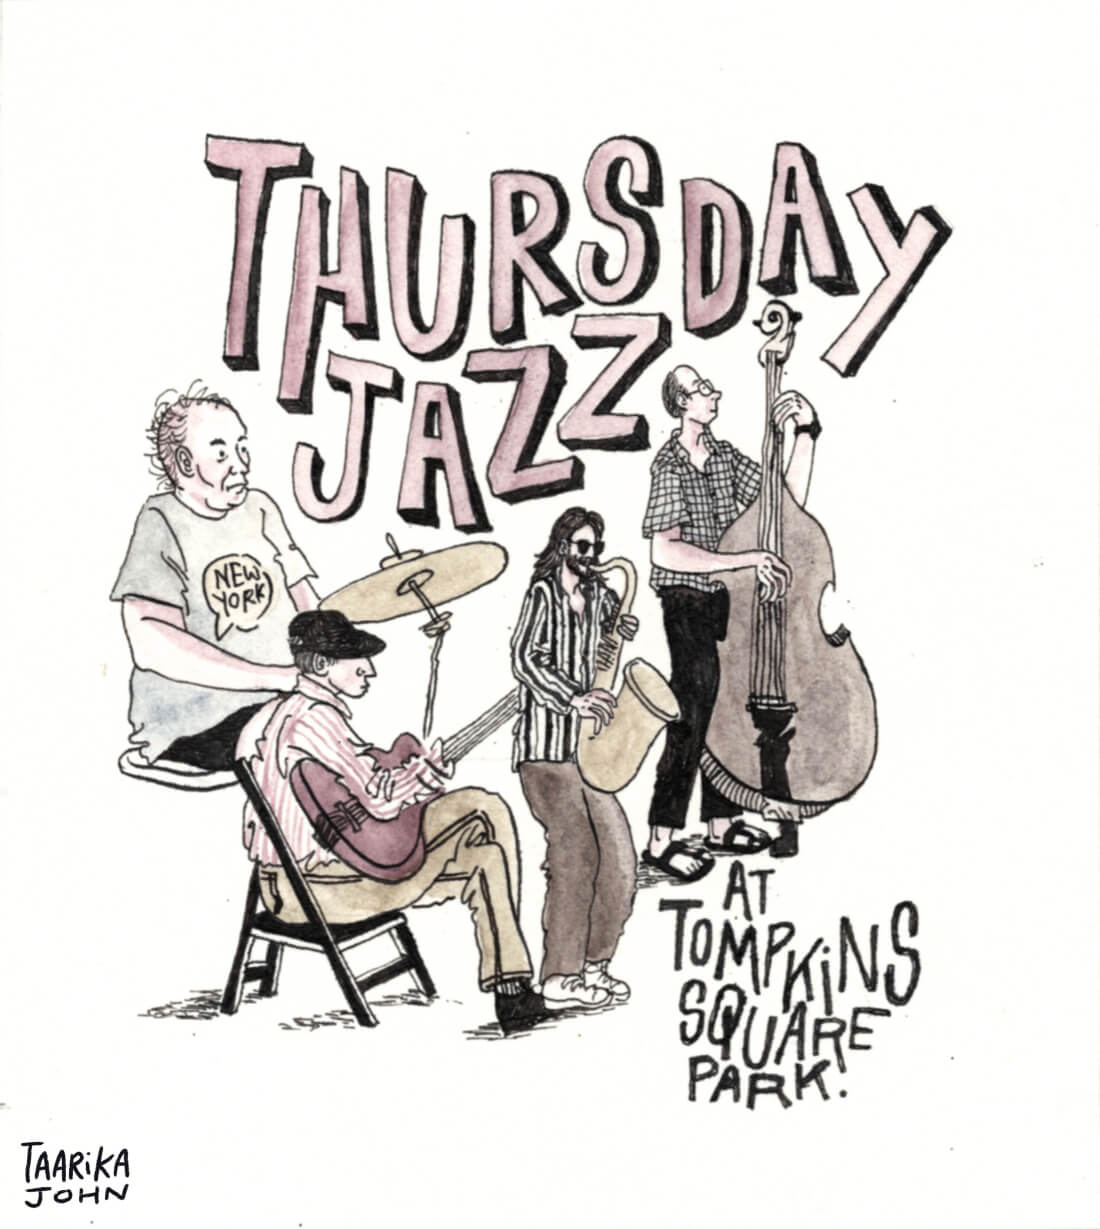 Thursday Jazz